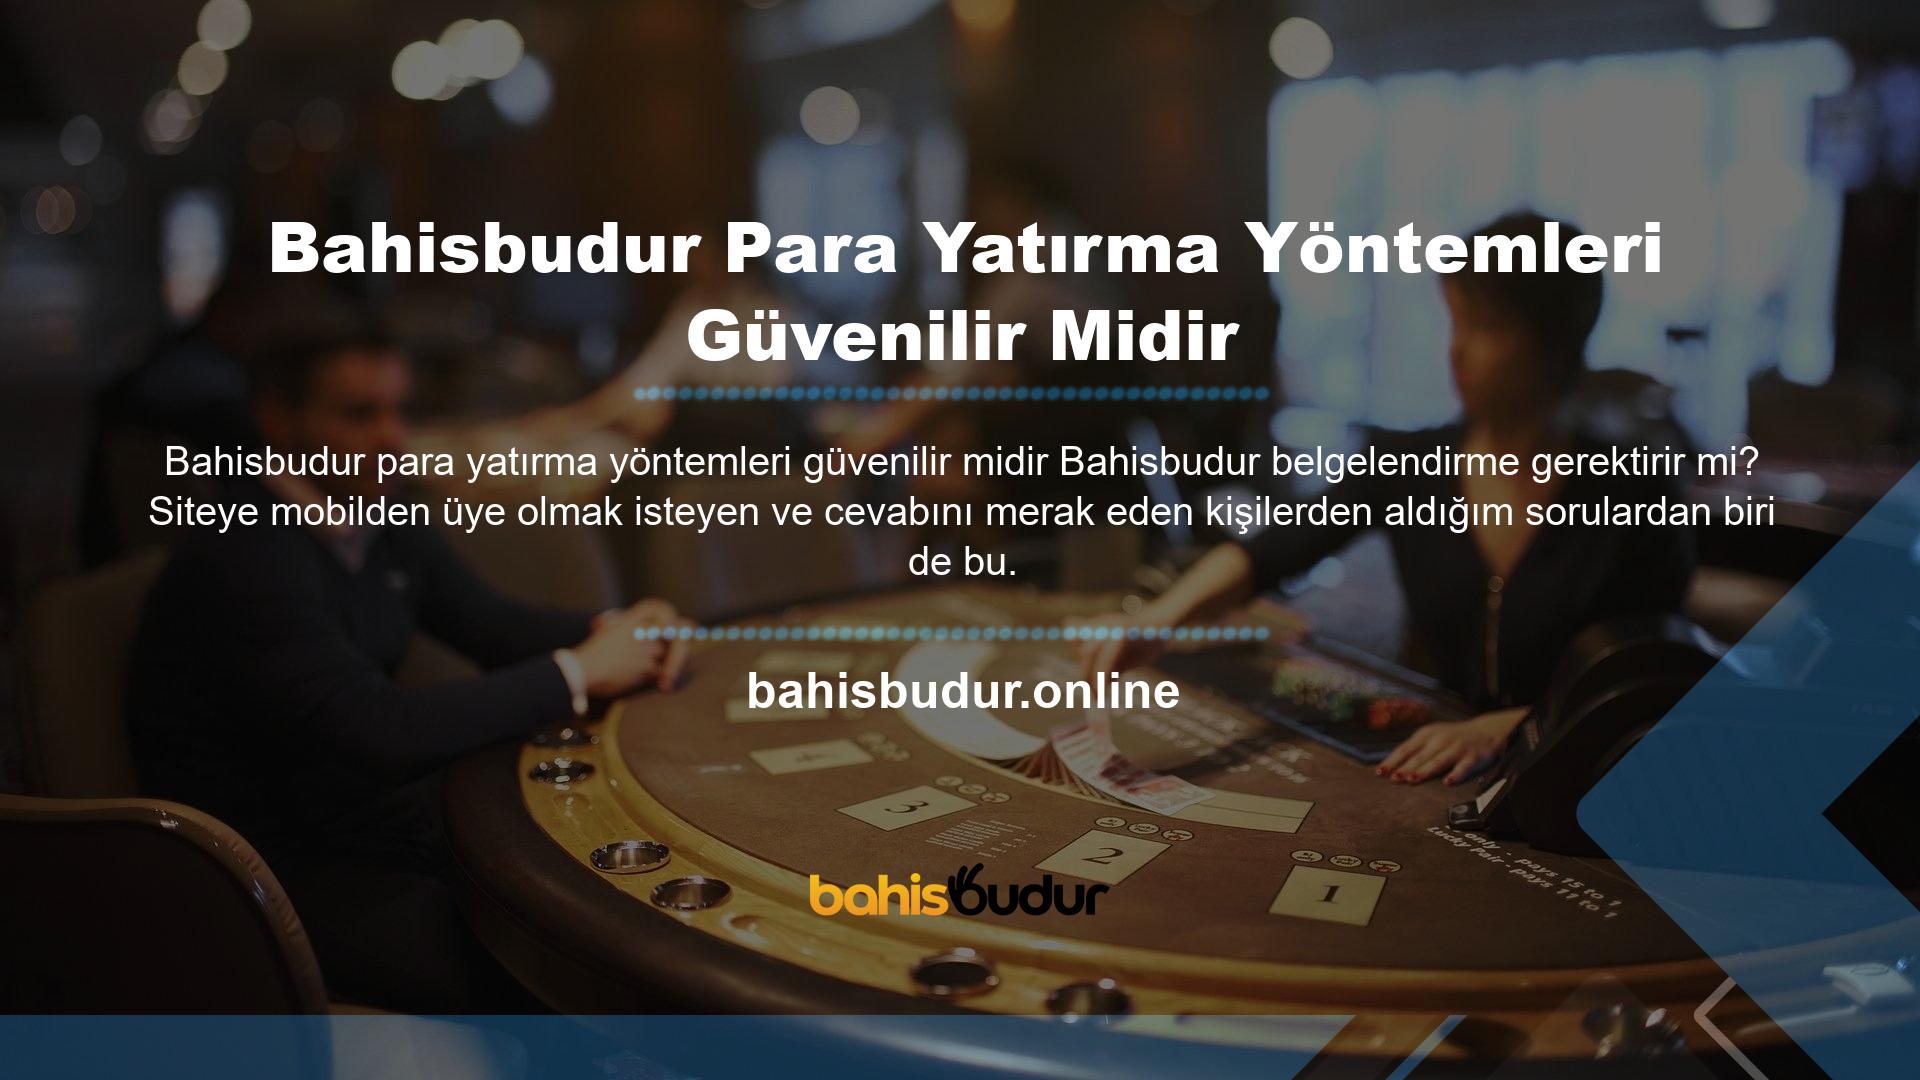 Bahisbudur, üyelerine yasal olarak casino hizmetleri sunan bir casino şirketidir